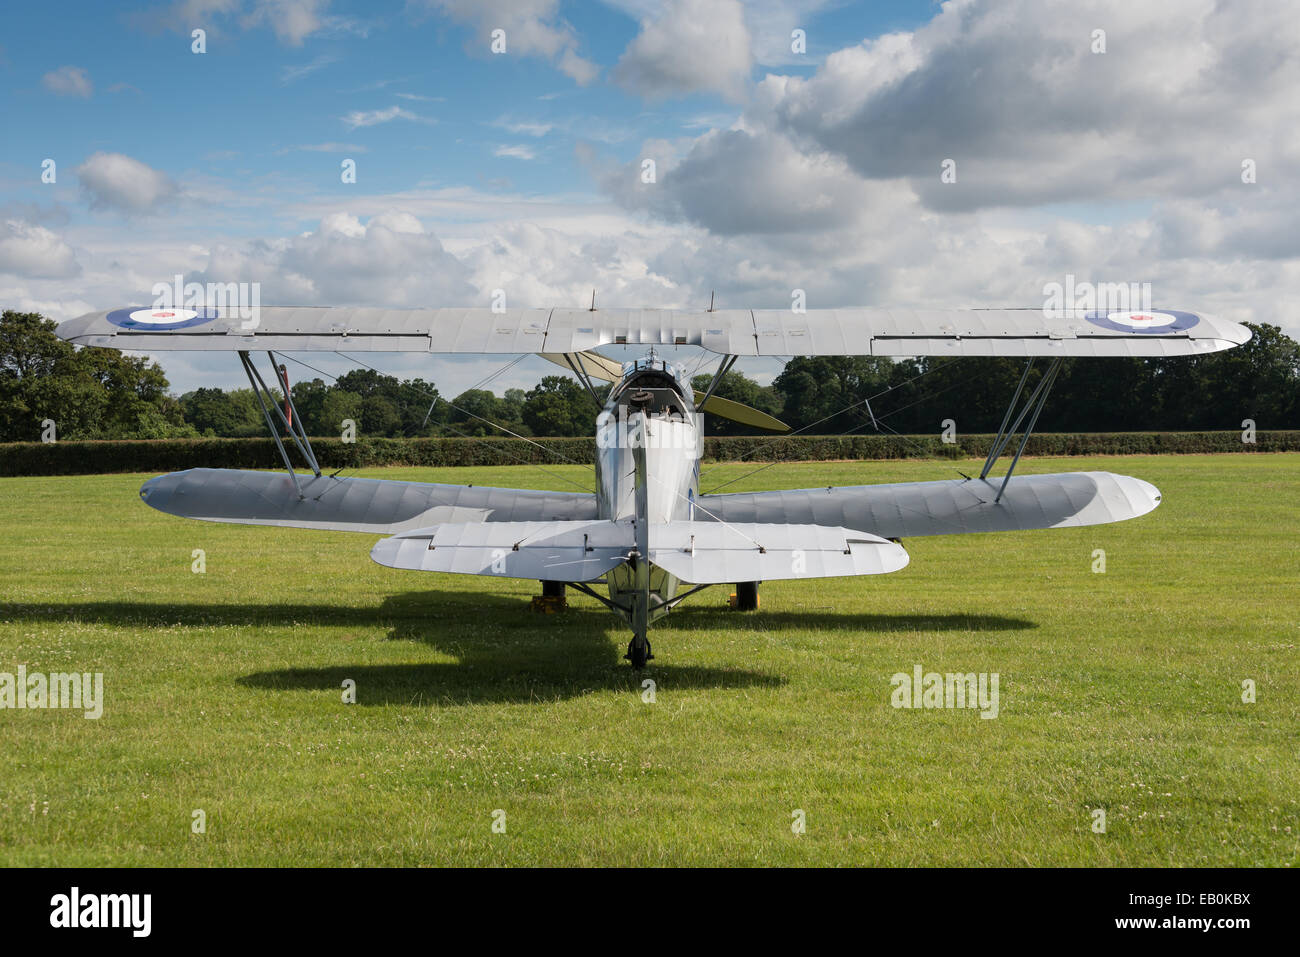 Biggleswade, UK - 29 juin 2014 : un millésime biplan Hawker Hind sur l'affichage à la Shuttleworth Collection air show. Banque D'Images